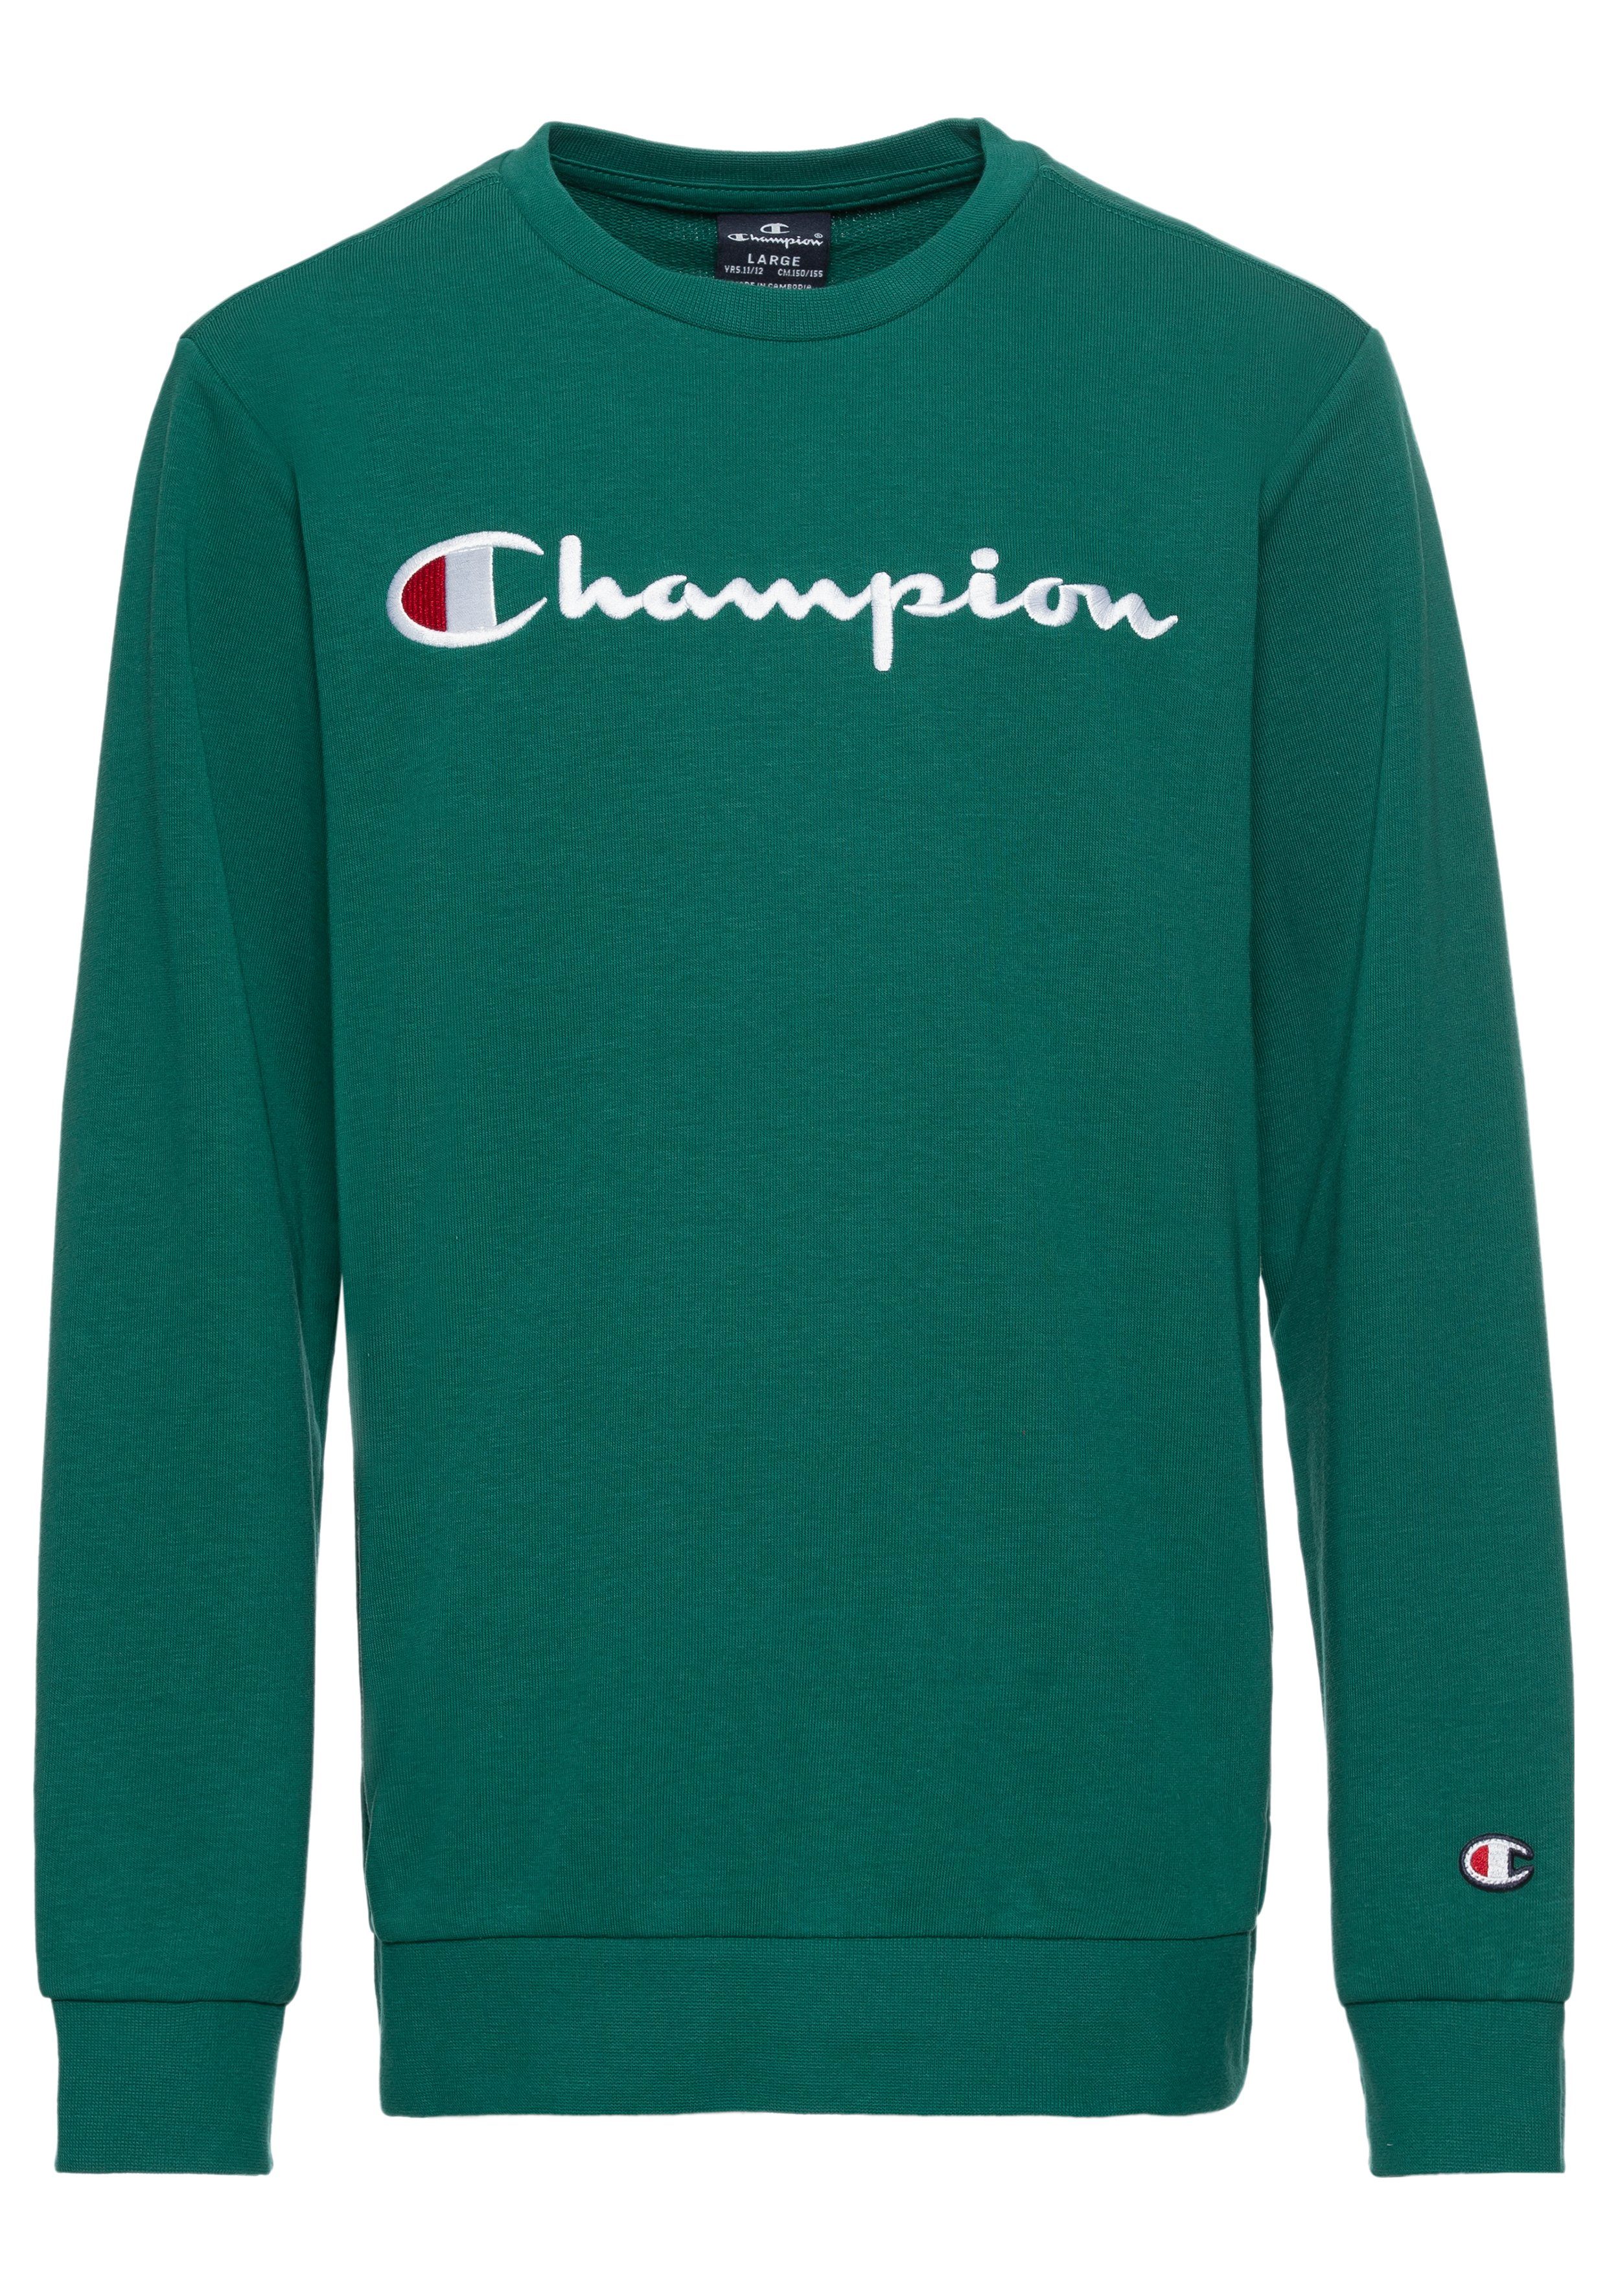 Champion Sweatshirt Icons Crewneck Sweatshirt